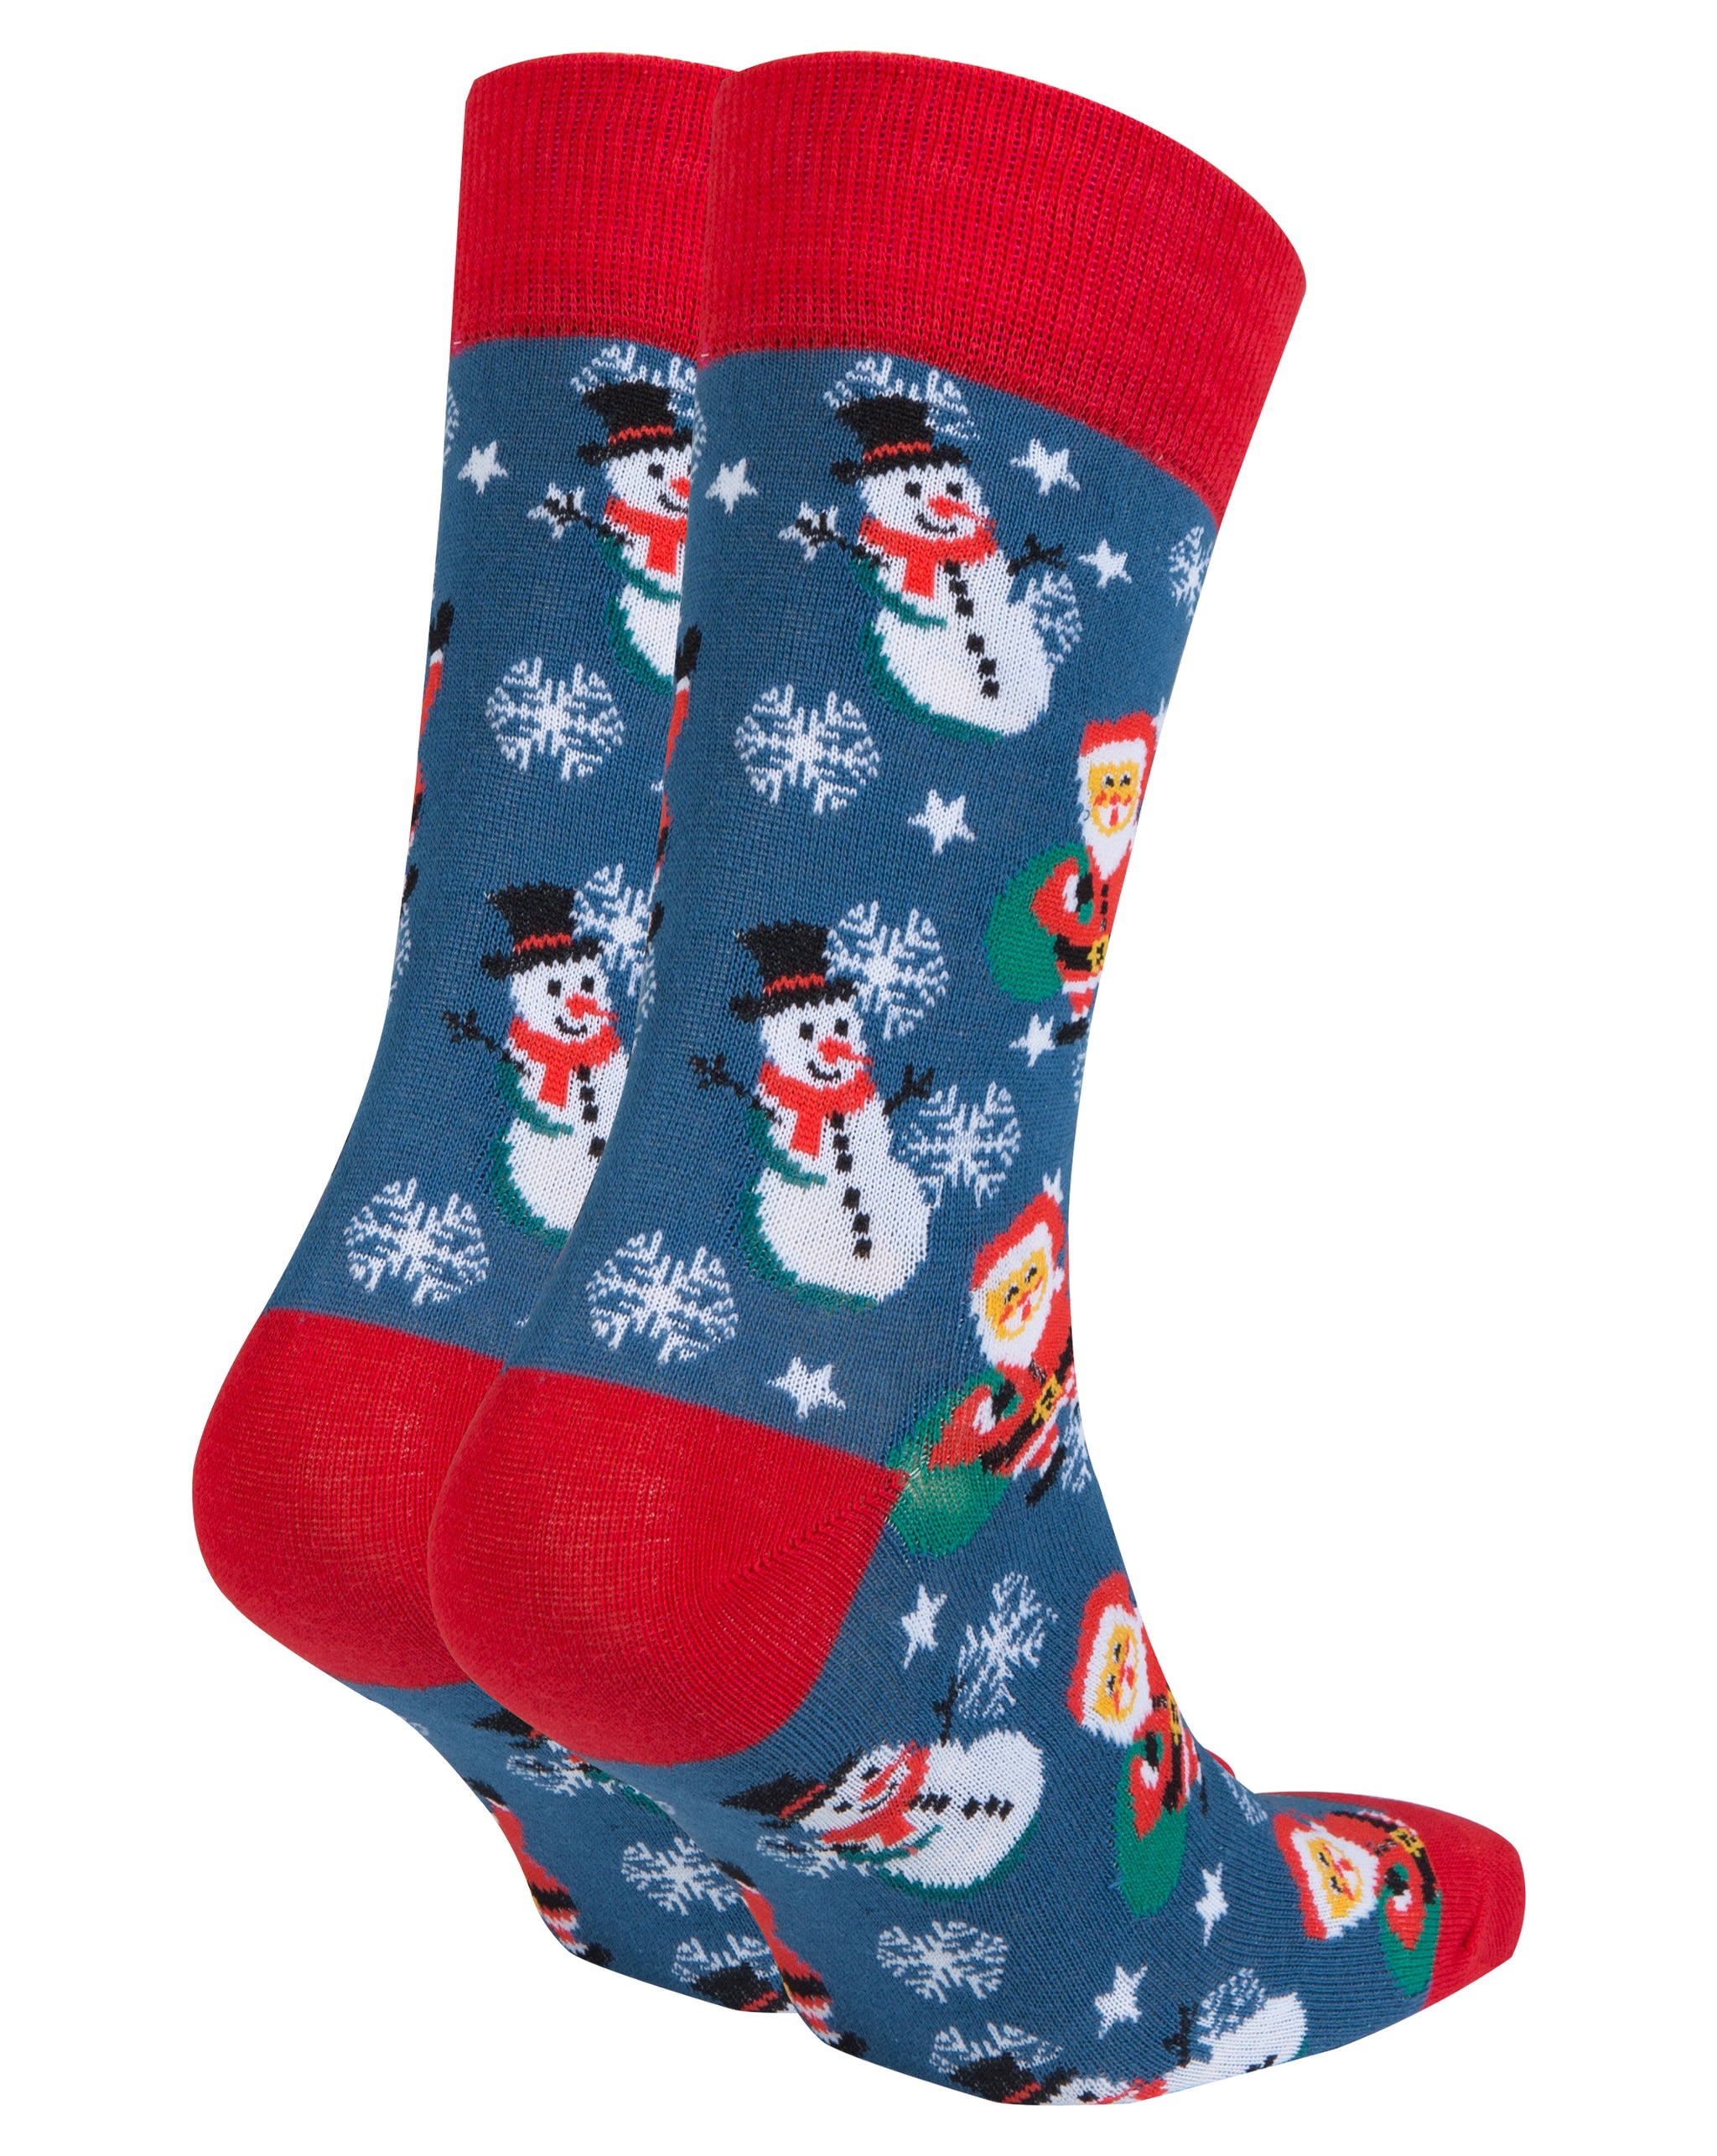 Men's Santa Socks - Socks n Socks